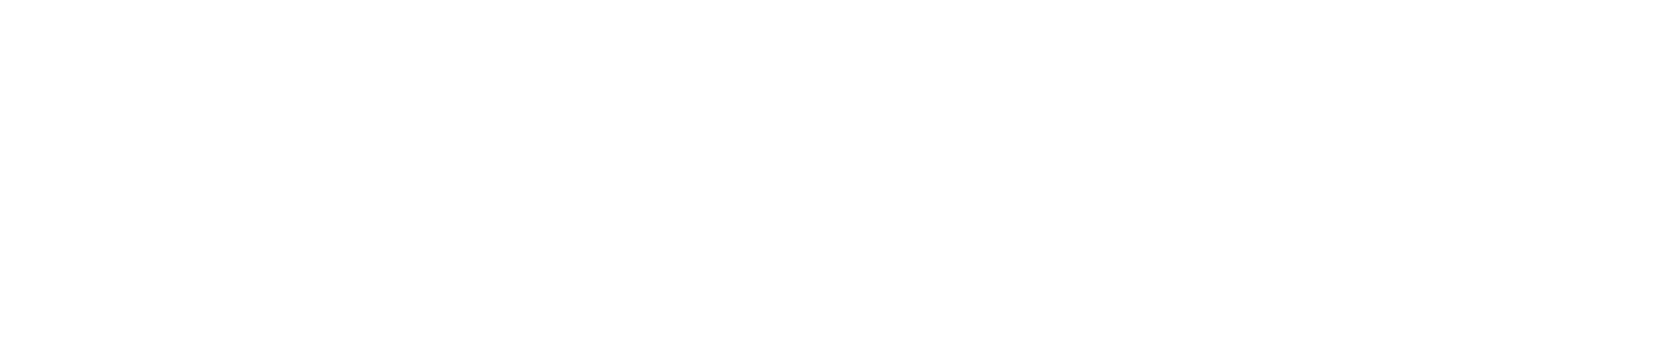 Логотип Газ Оил Пром